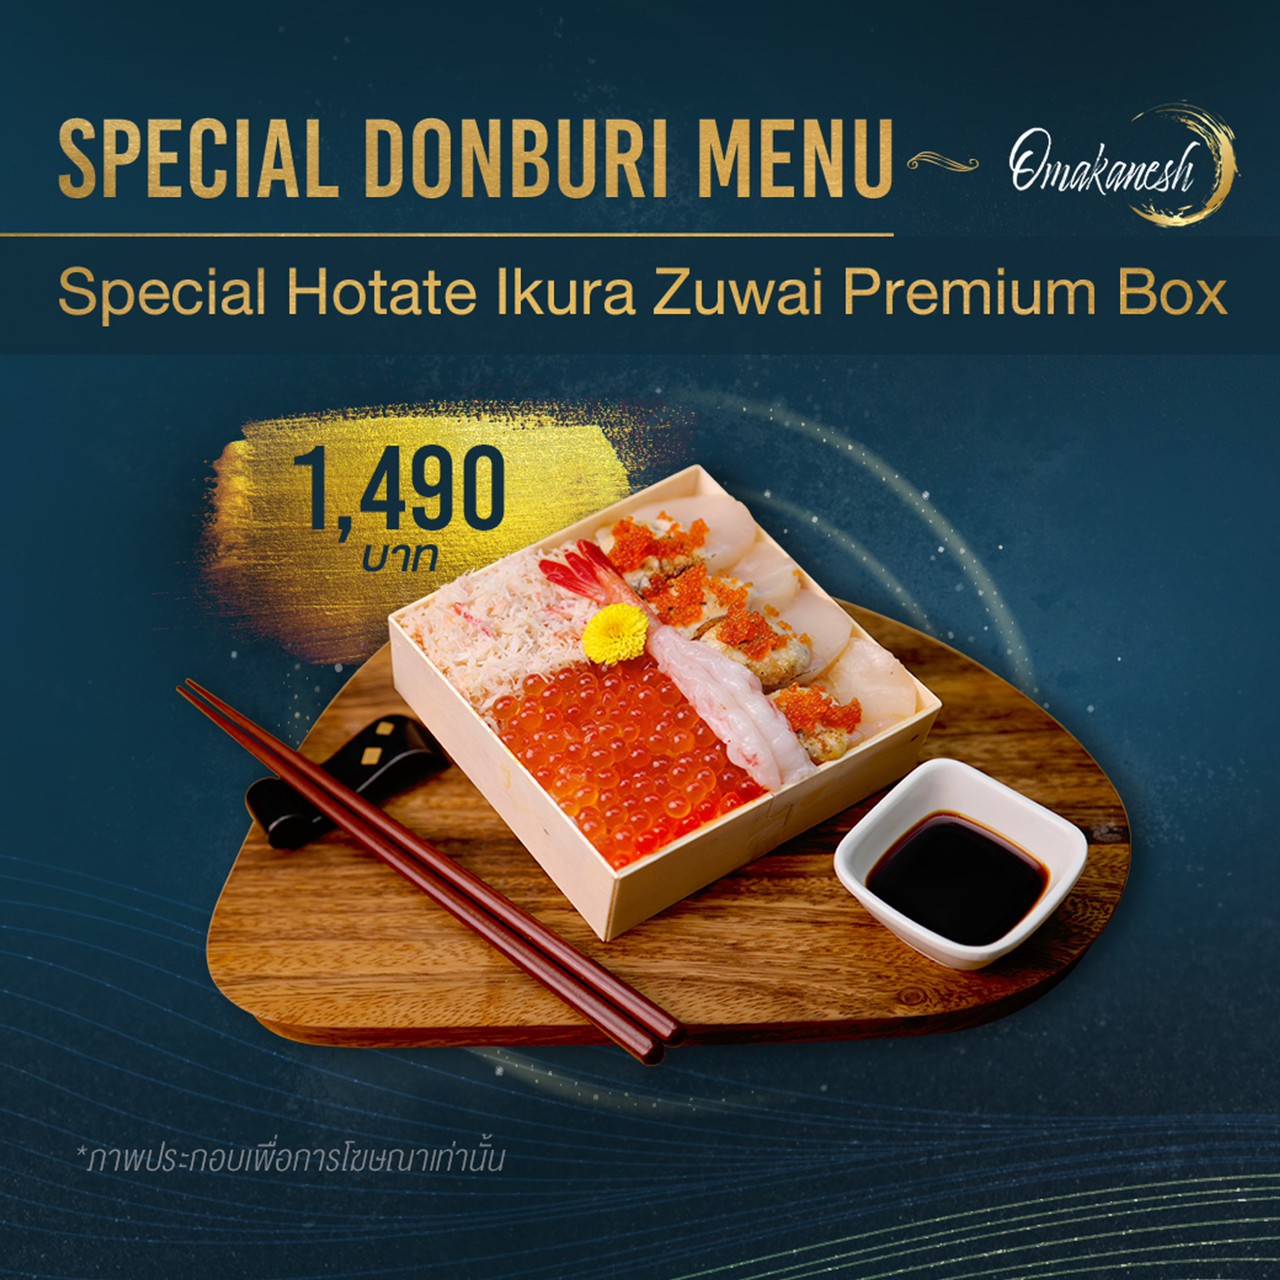 Special Hotate Ikura Zuwai Premium Box  ข้าวหน้าหอยเชลล์โฮตาเตะเนื้อปูซูไวเบนโตะ